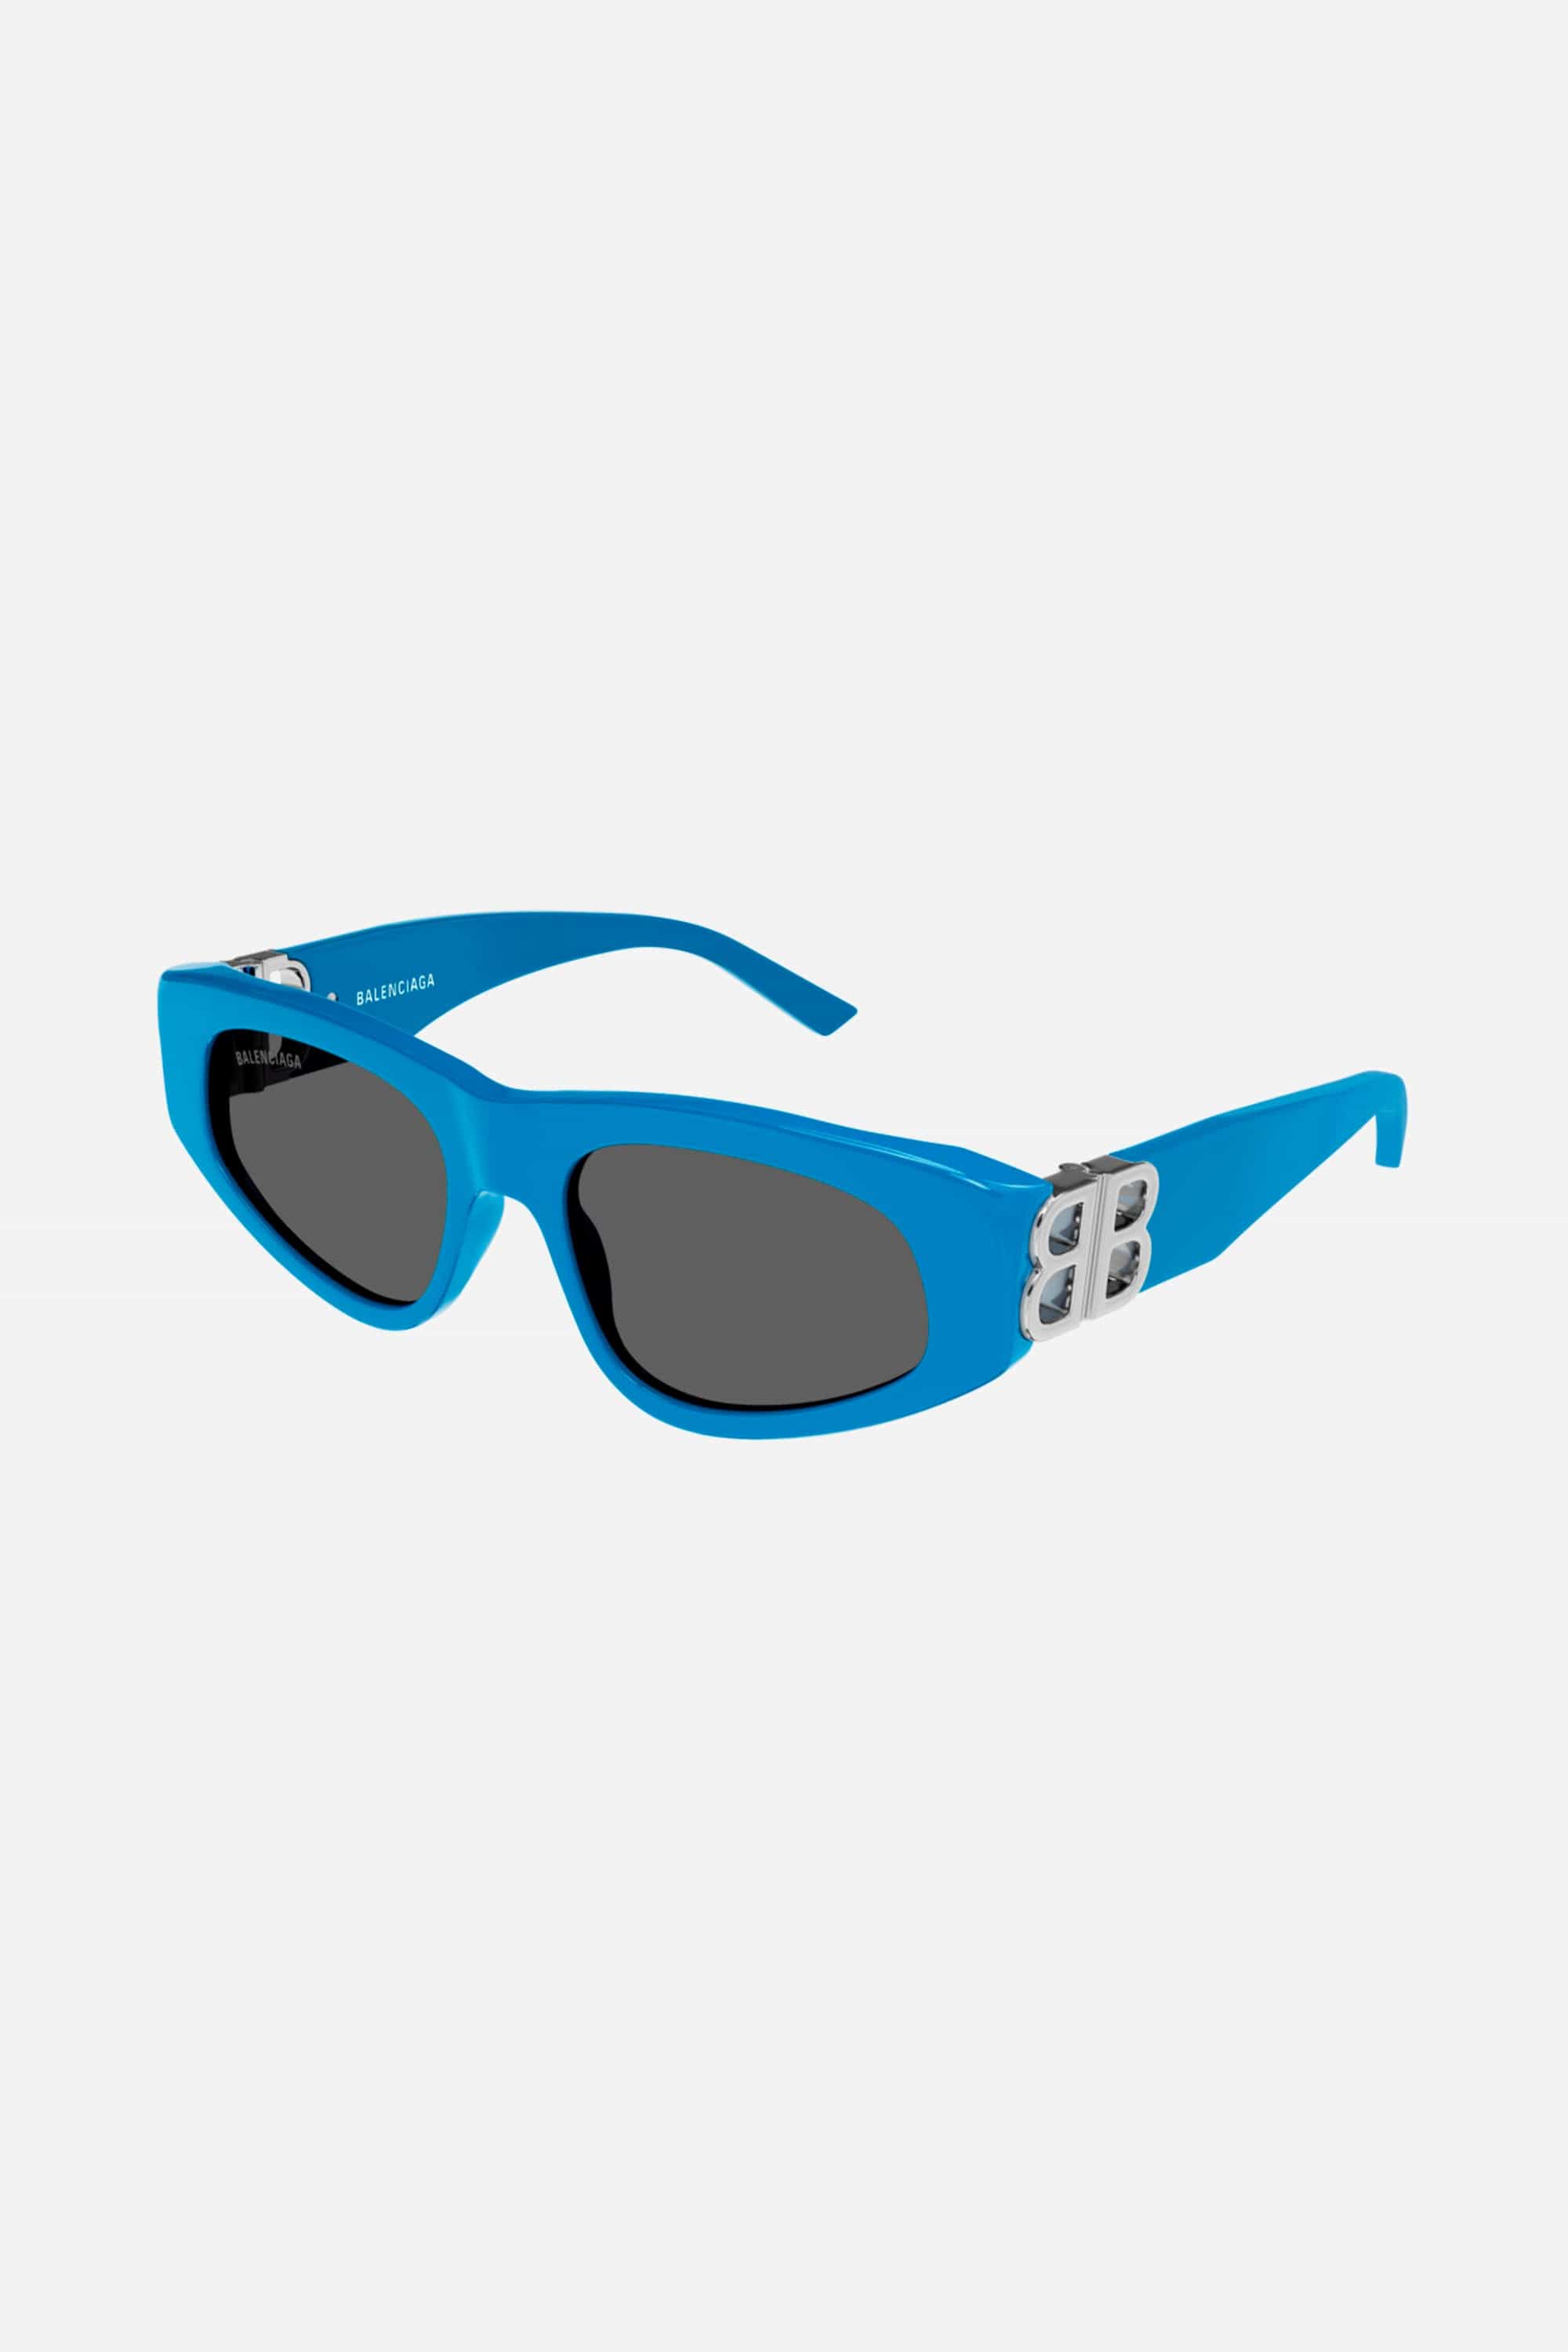 Balenciaga blue and silver cat-eye BB sunglasses - Eyewear Club